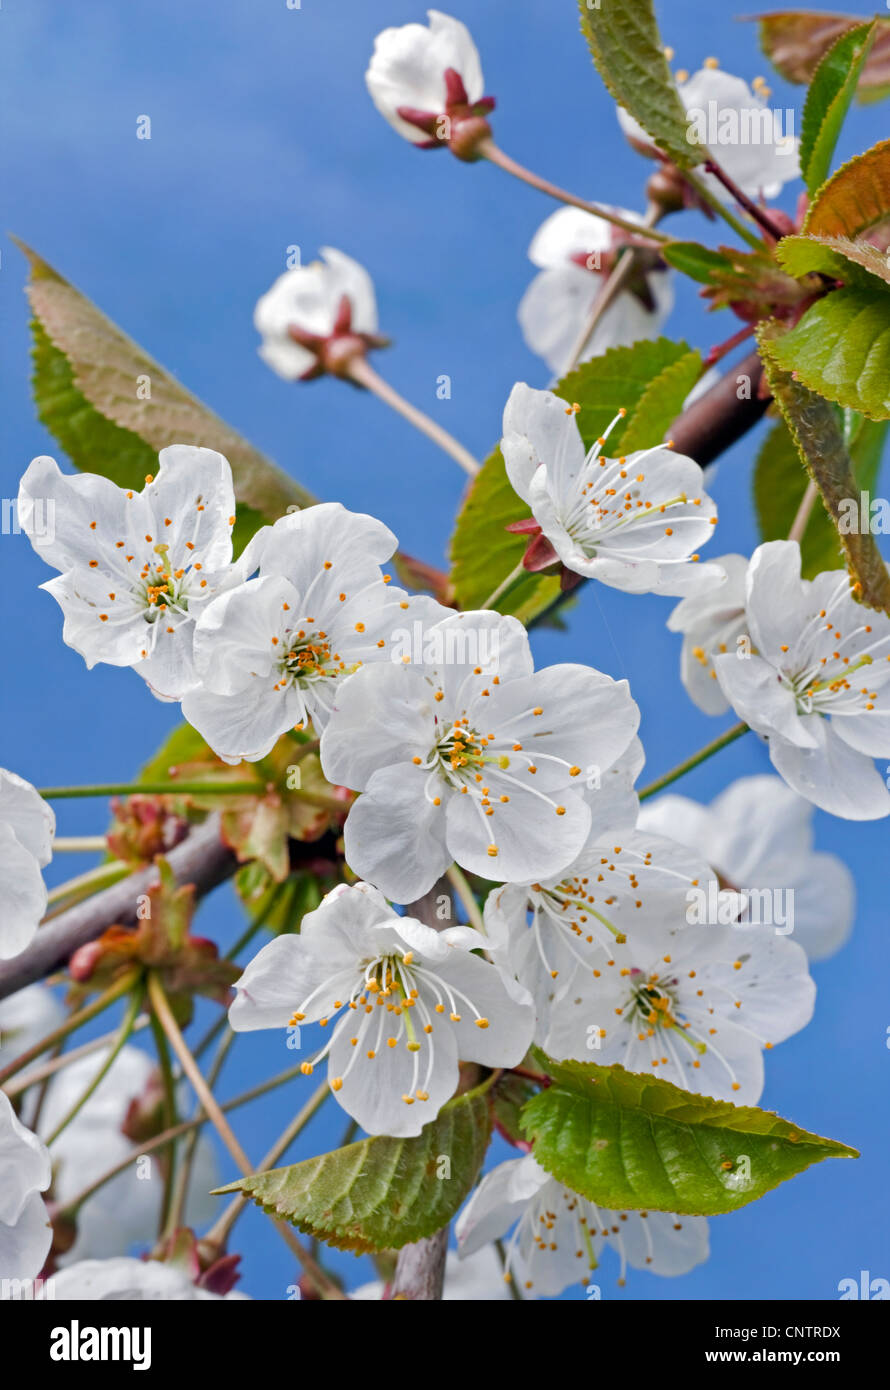 Blossoming Wild cherry / Sweet cherry (Prunus avium) with buds bursting and white flowers emerging in spring, Belgium Stock Photo